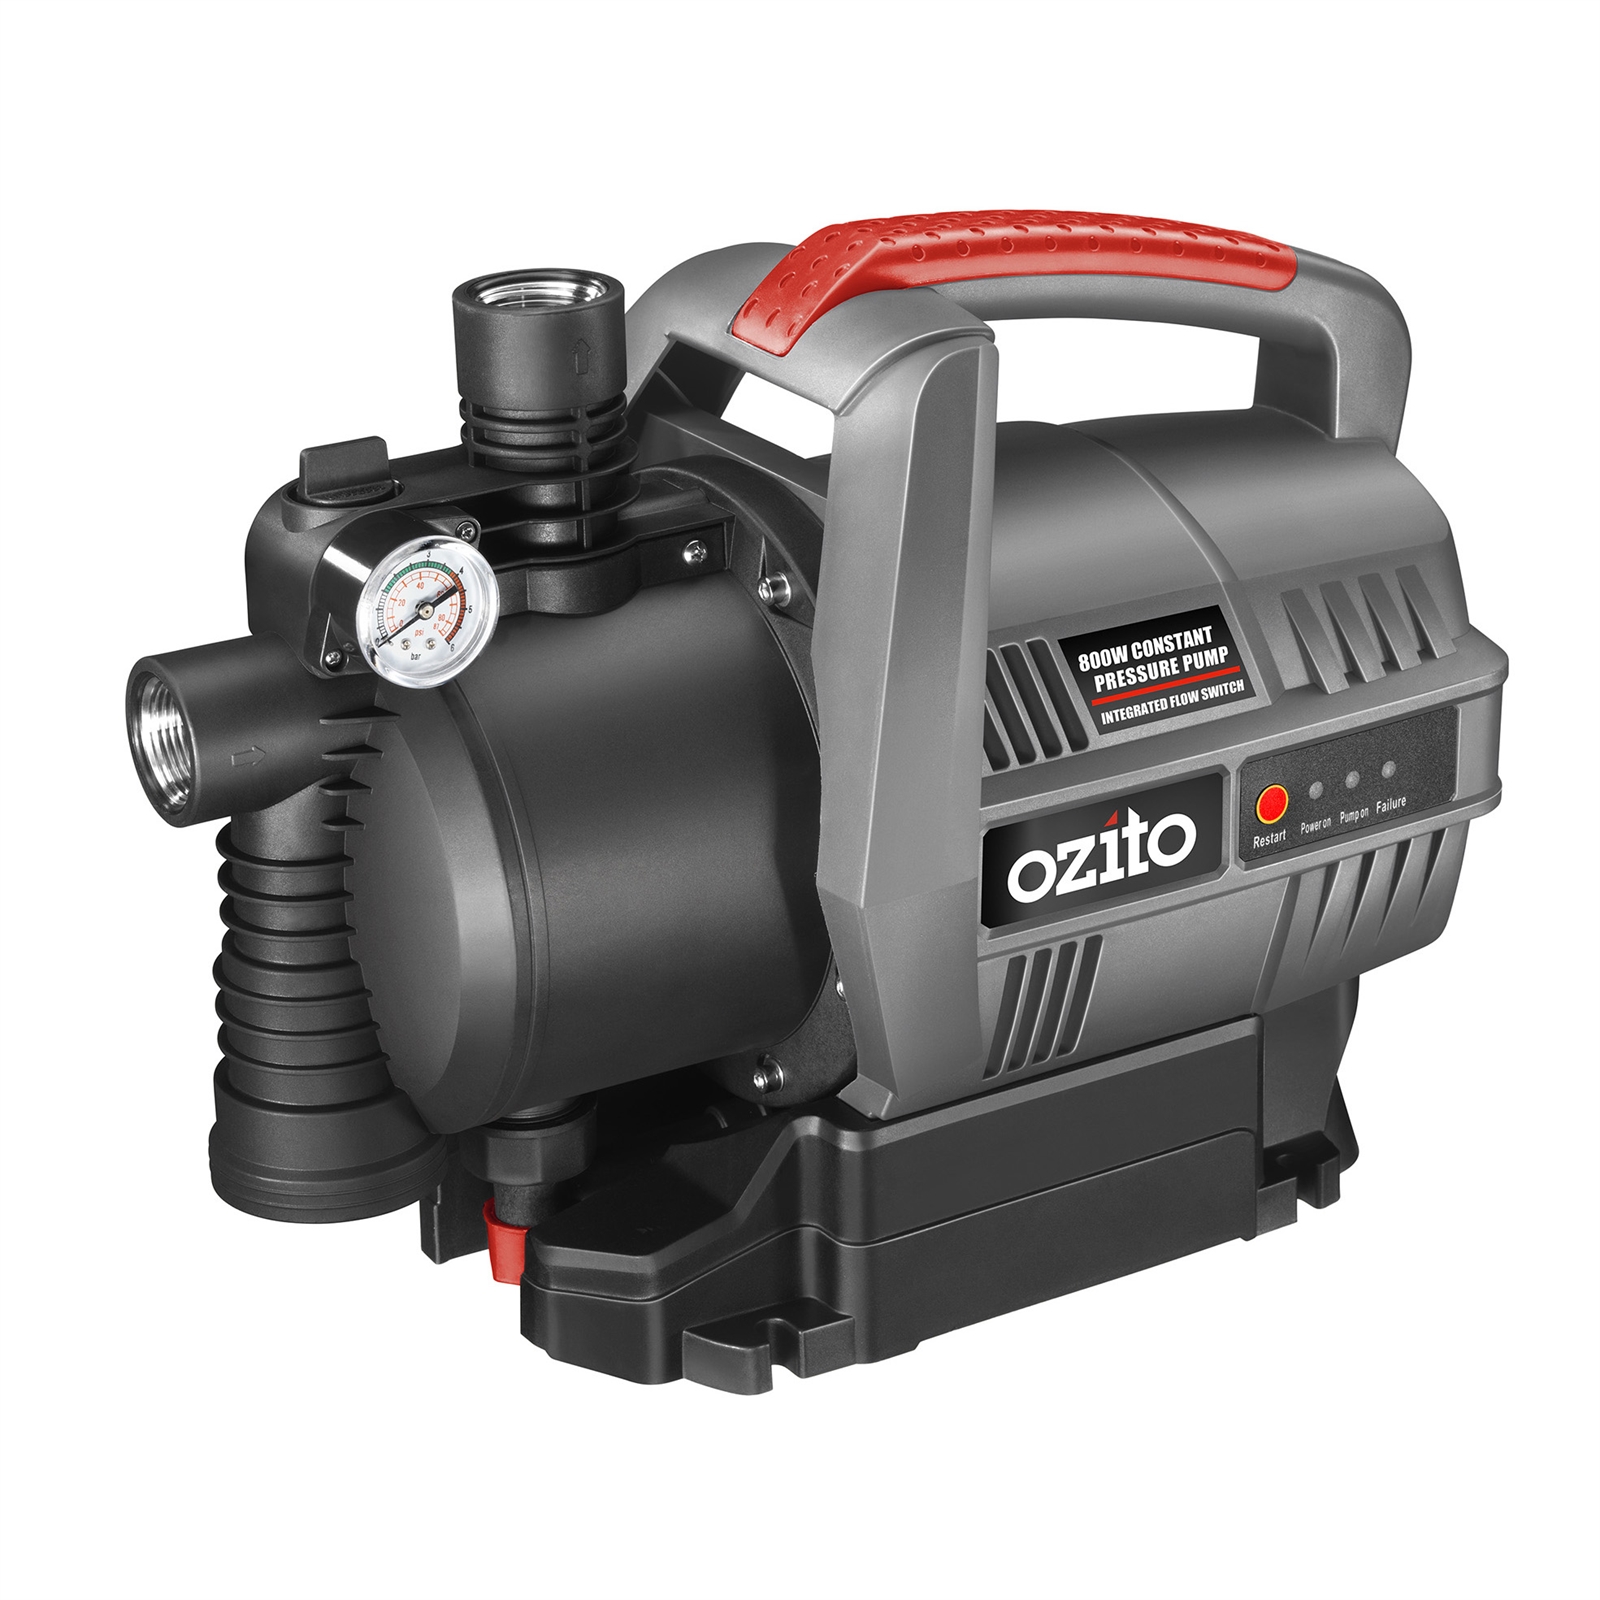 Ozito 800W Constant Pressure Pump